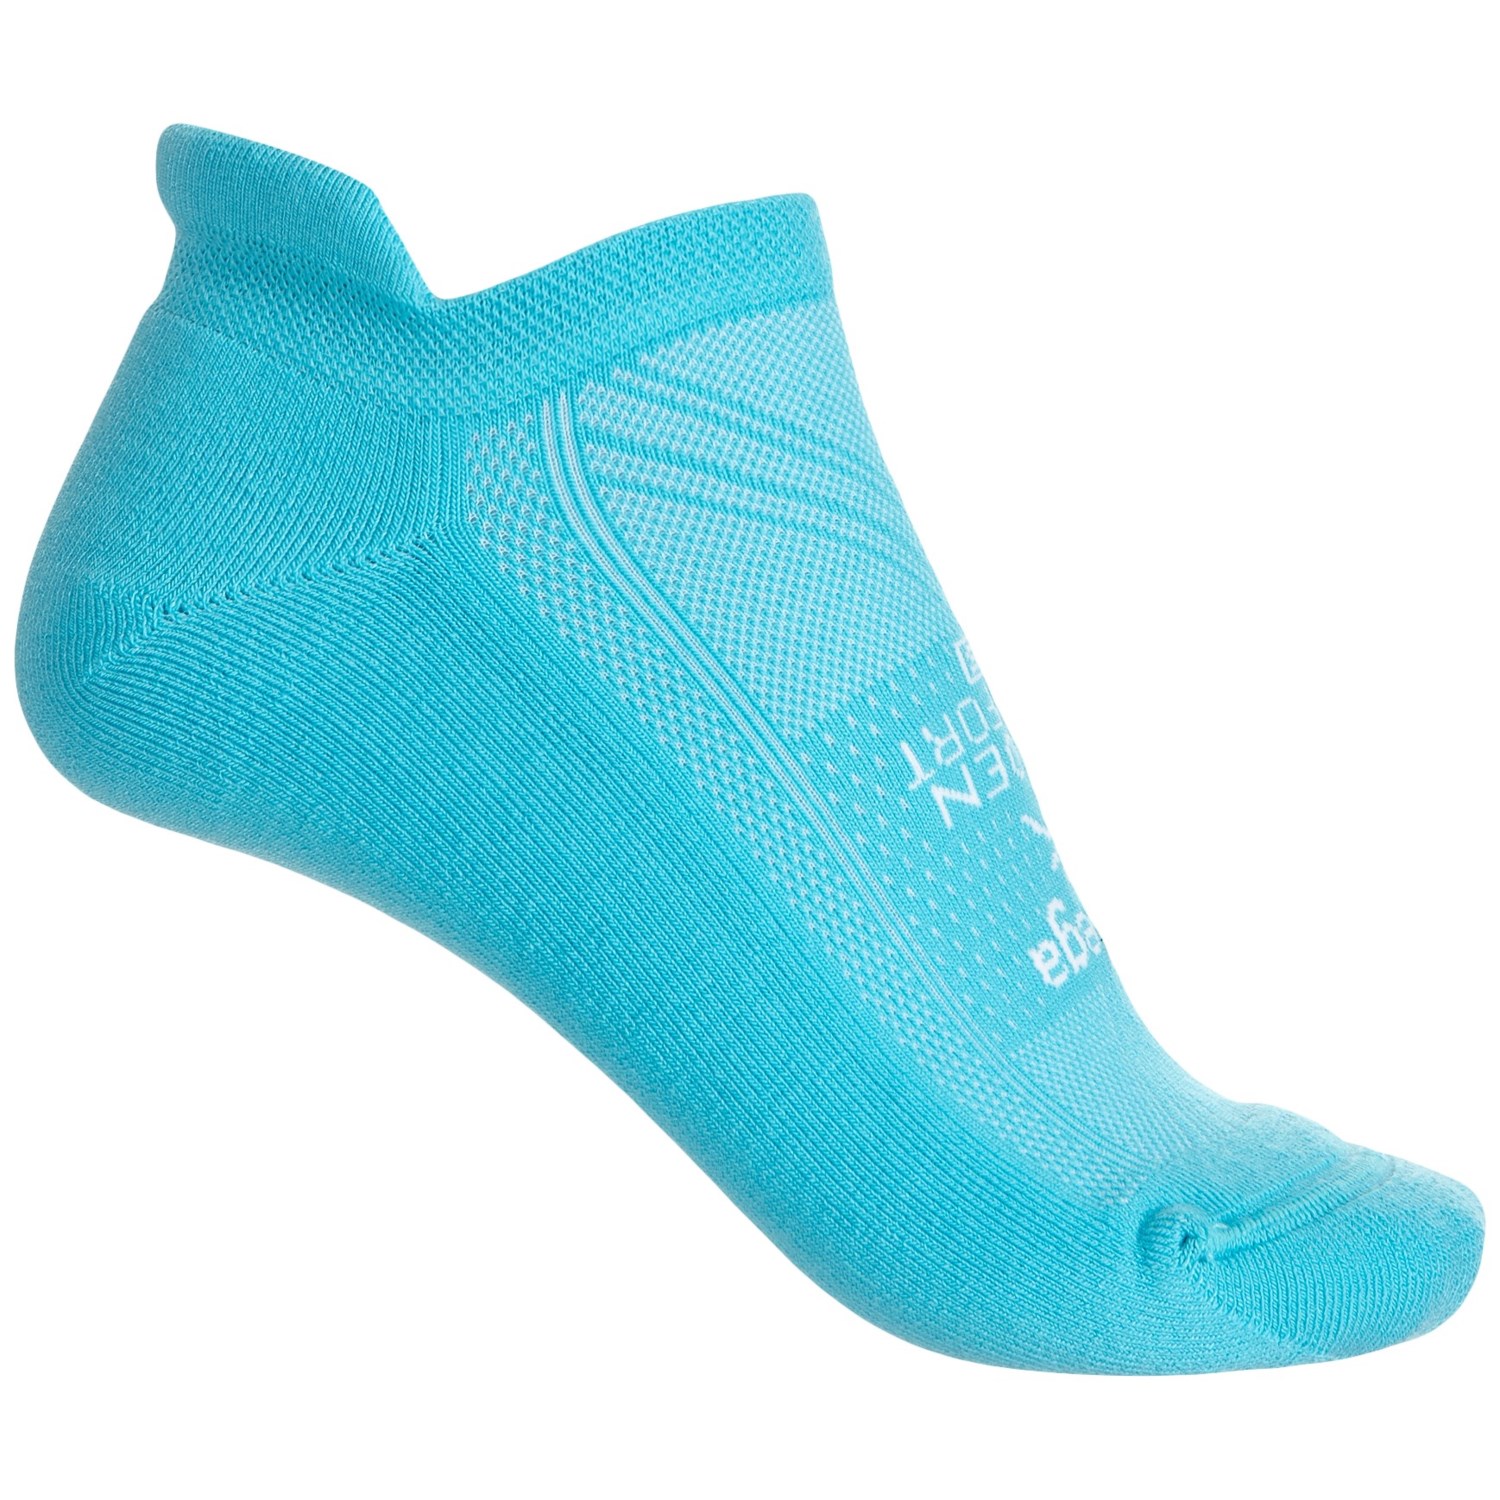 Balega Hidden Comfort Running Socks – Below the Ankle (For Women)